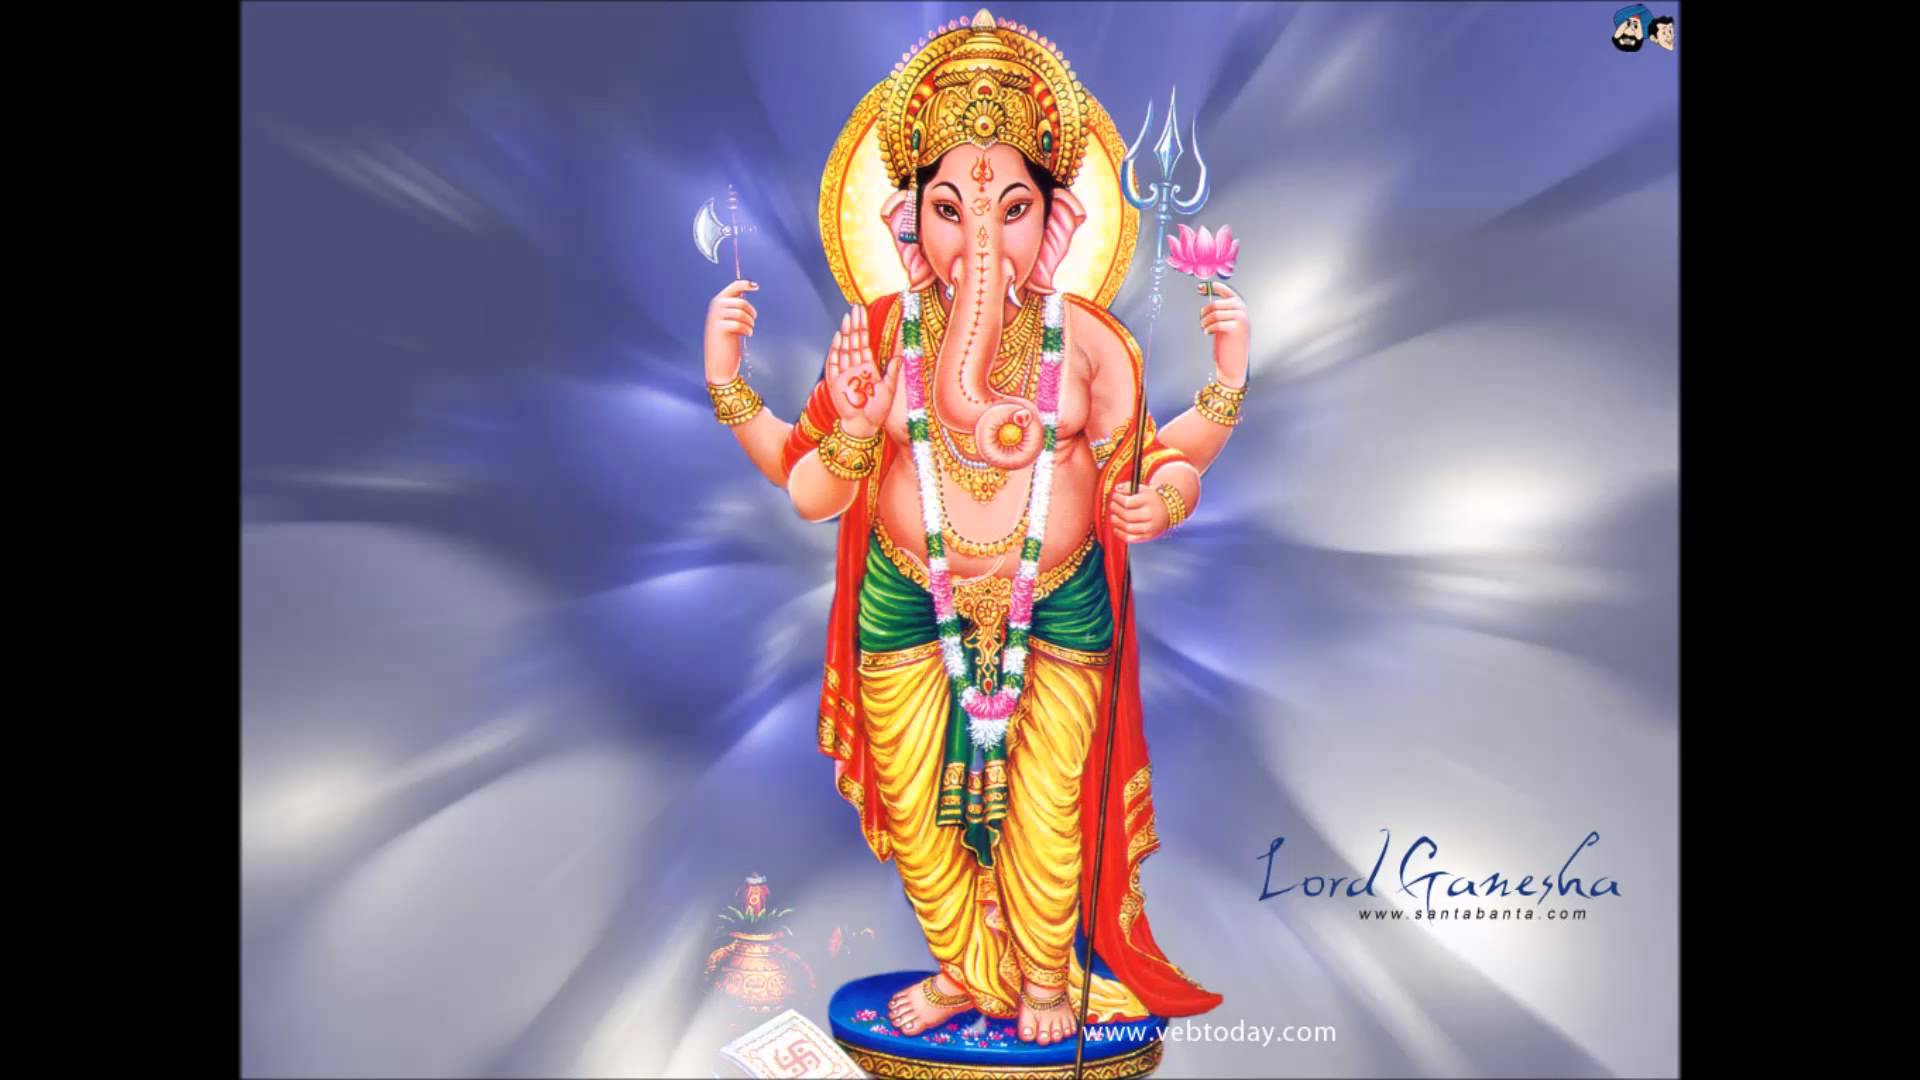 Pillayar Wallpaper - Lord Ganesha Standing Images Hd - HD Wallpaper 